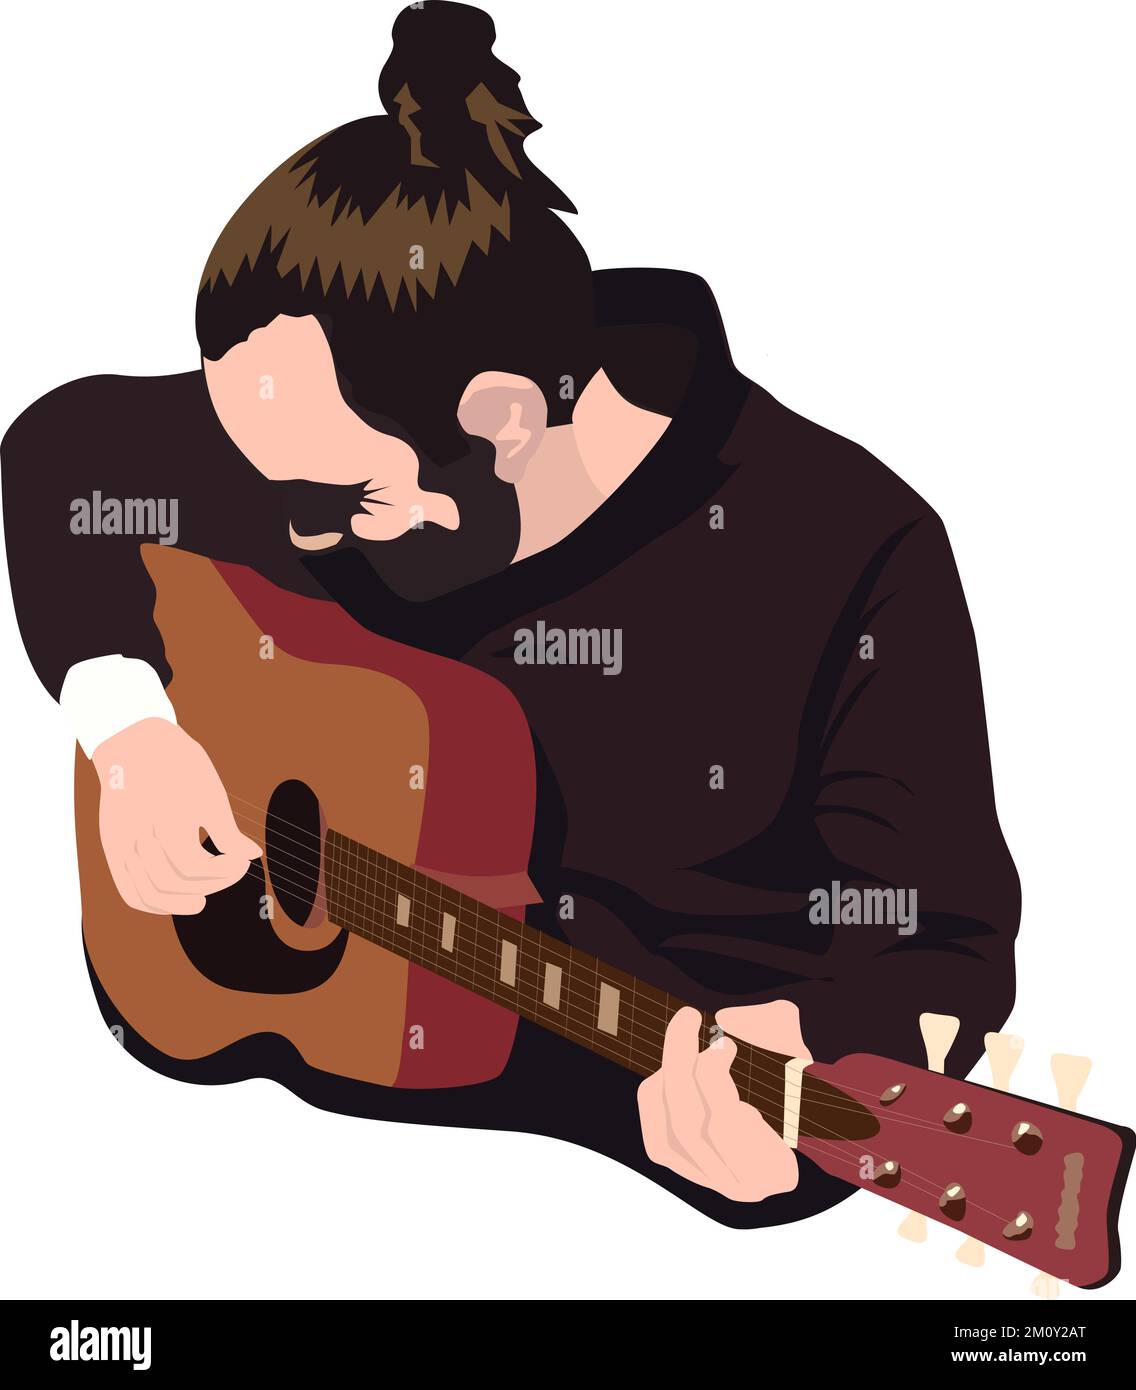 Illustrazione vettoriale del chitarrista. Uomo con capelli mordente e barba che suona la chitarra. Illustrazione Vettoriale